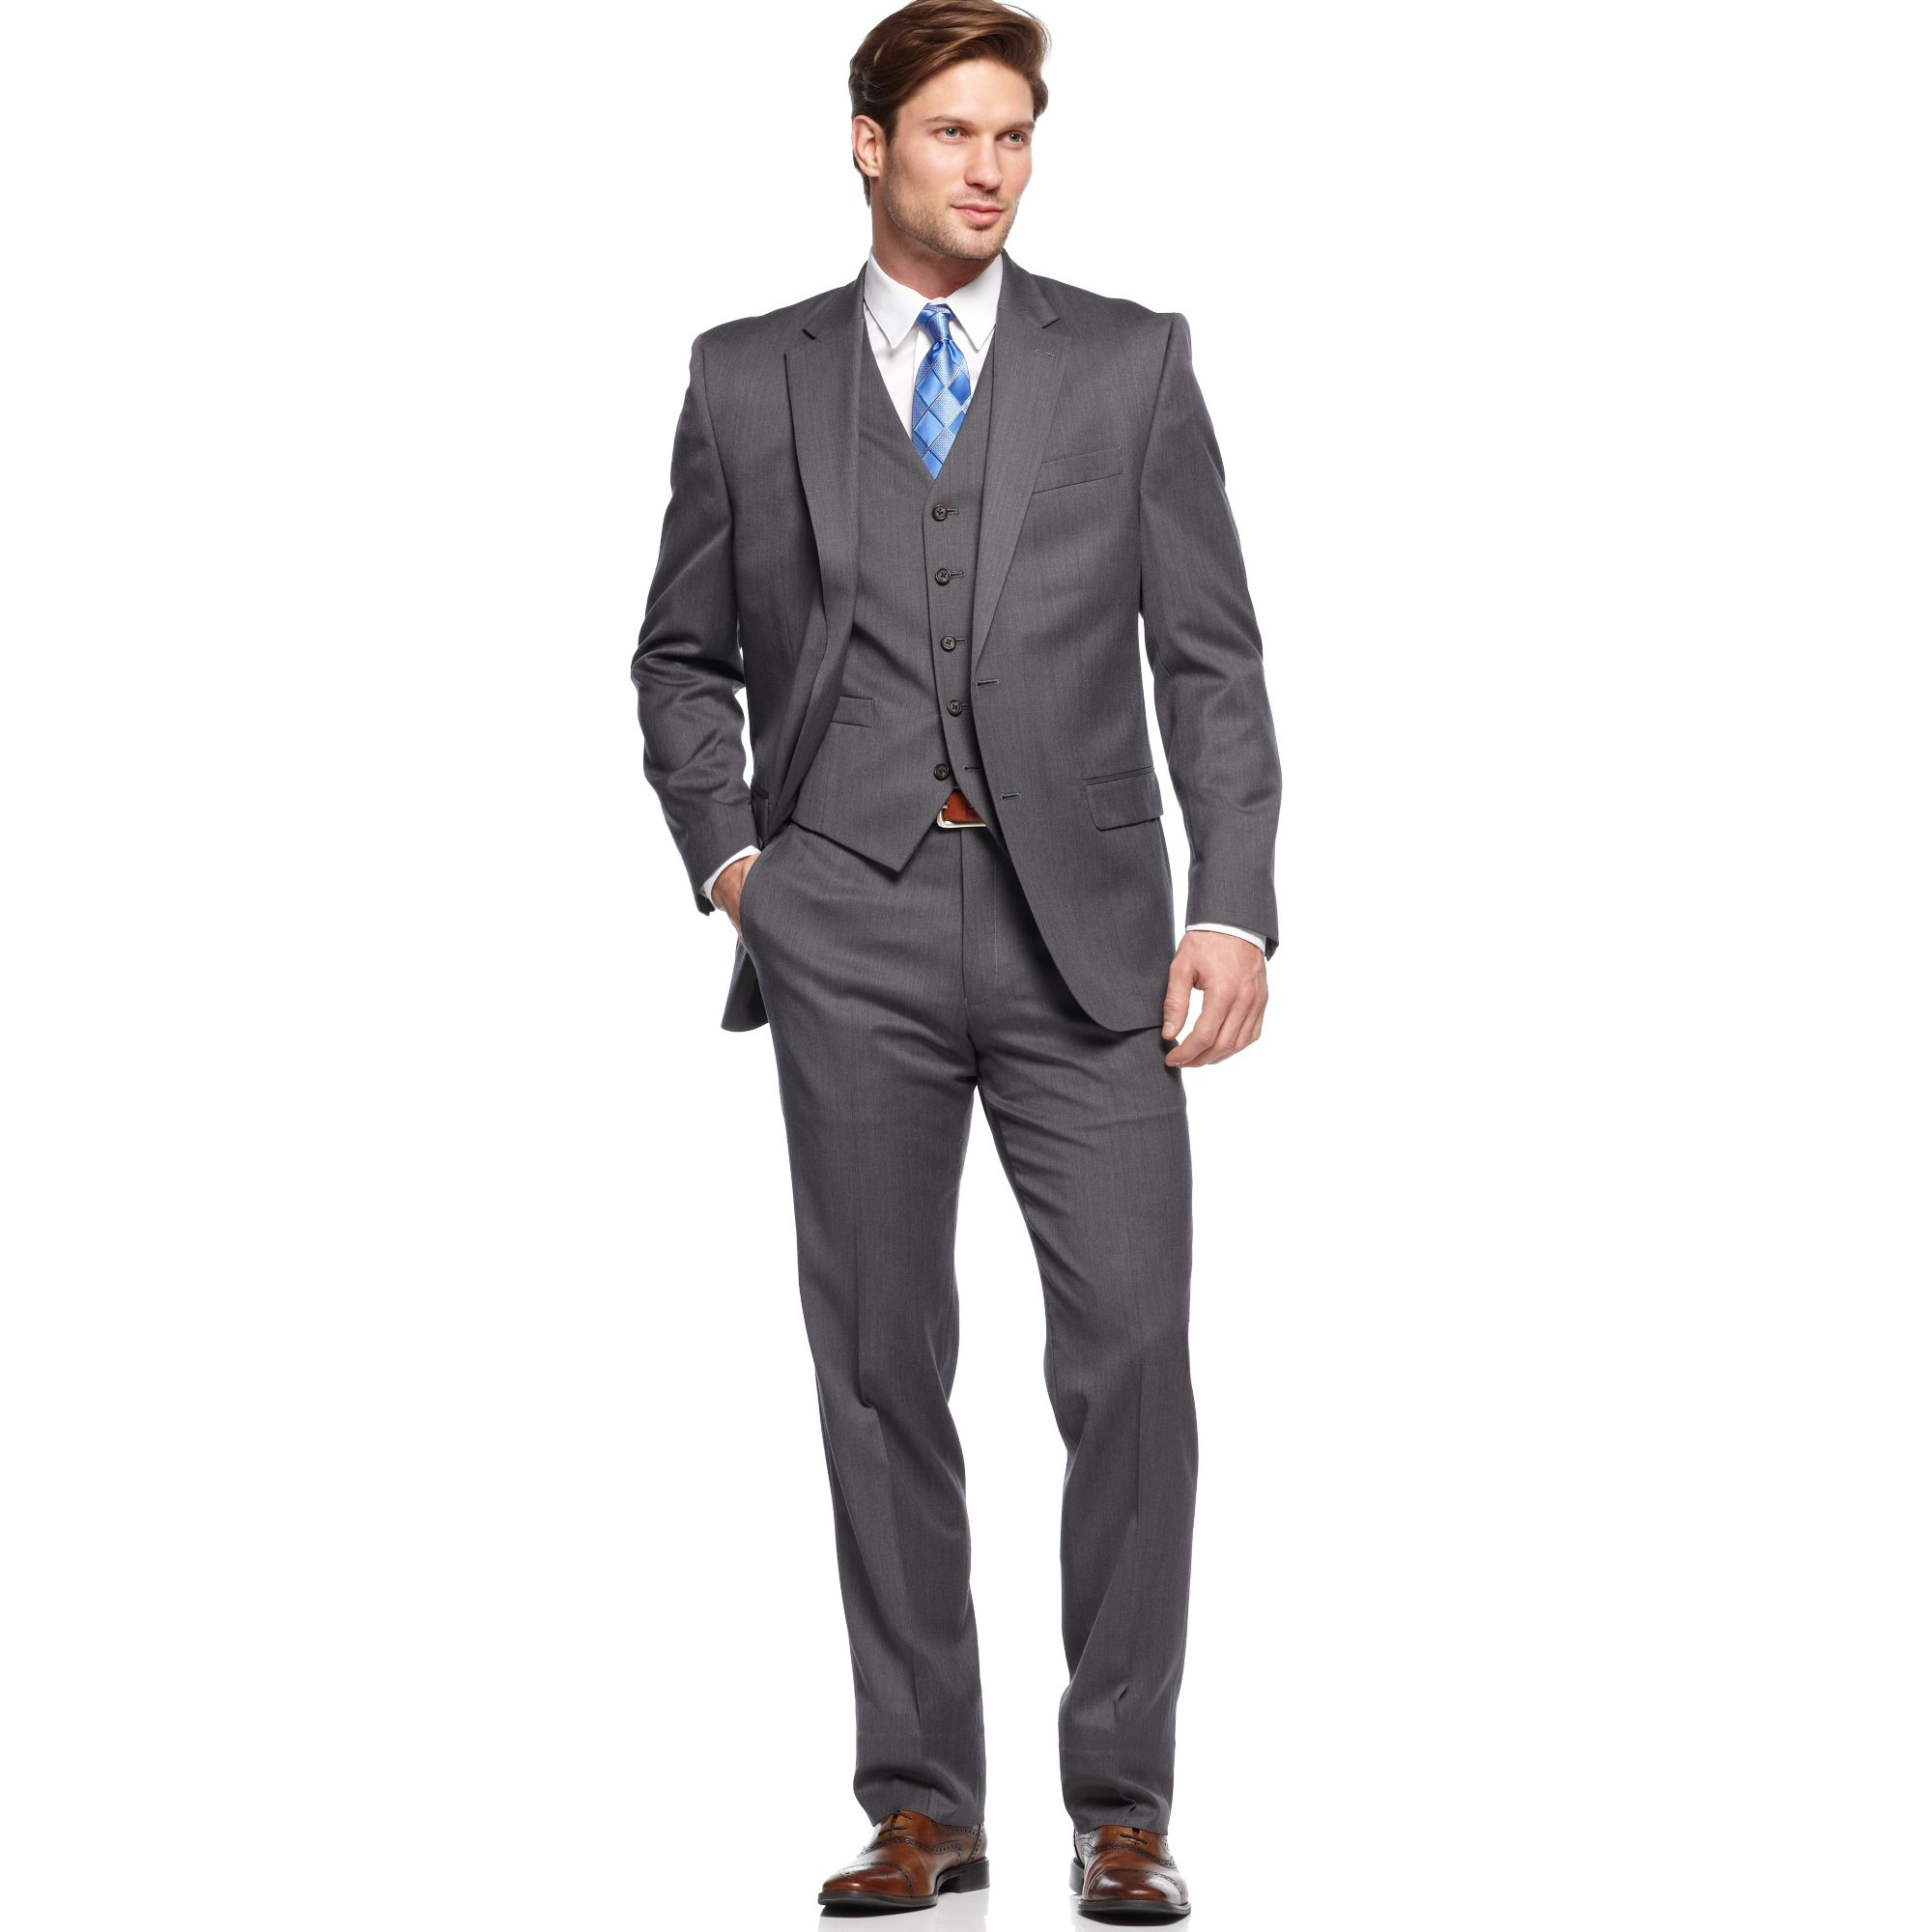 Lyst - Lauren By Ralph Lauren Charcoal Solid Vested Suit in Gray for Men